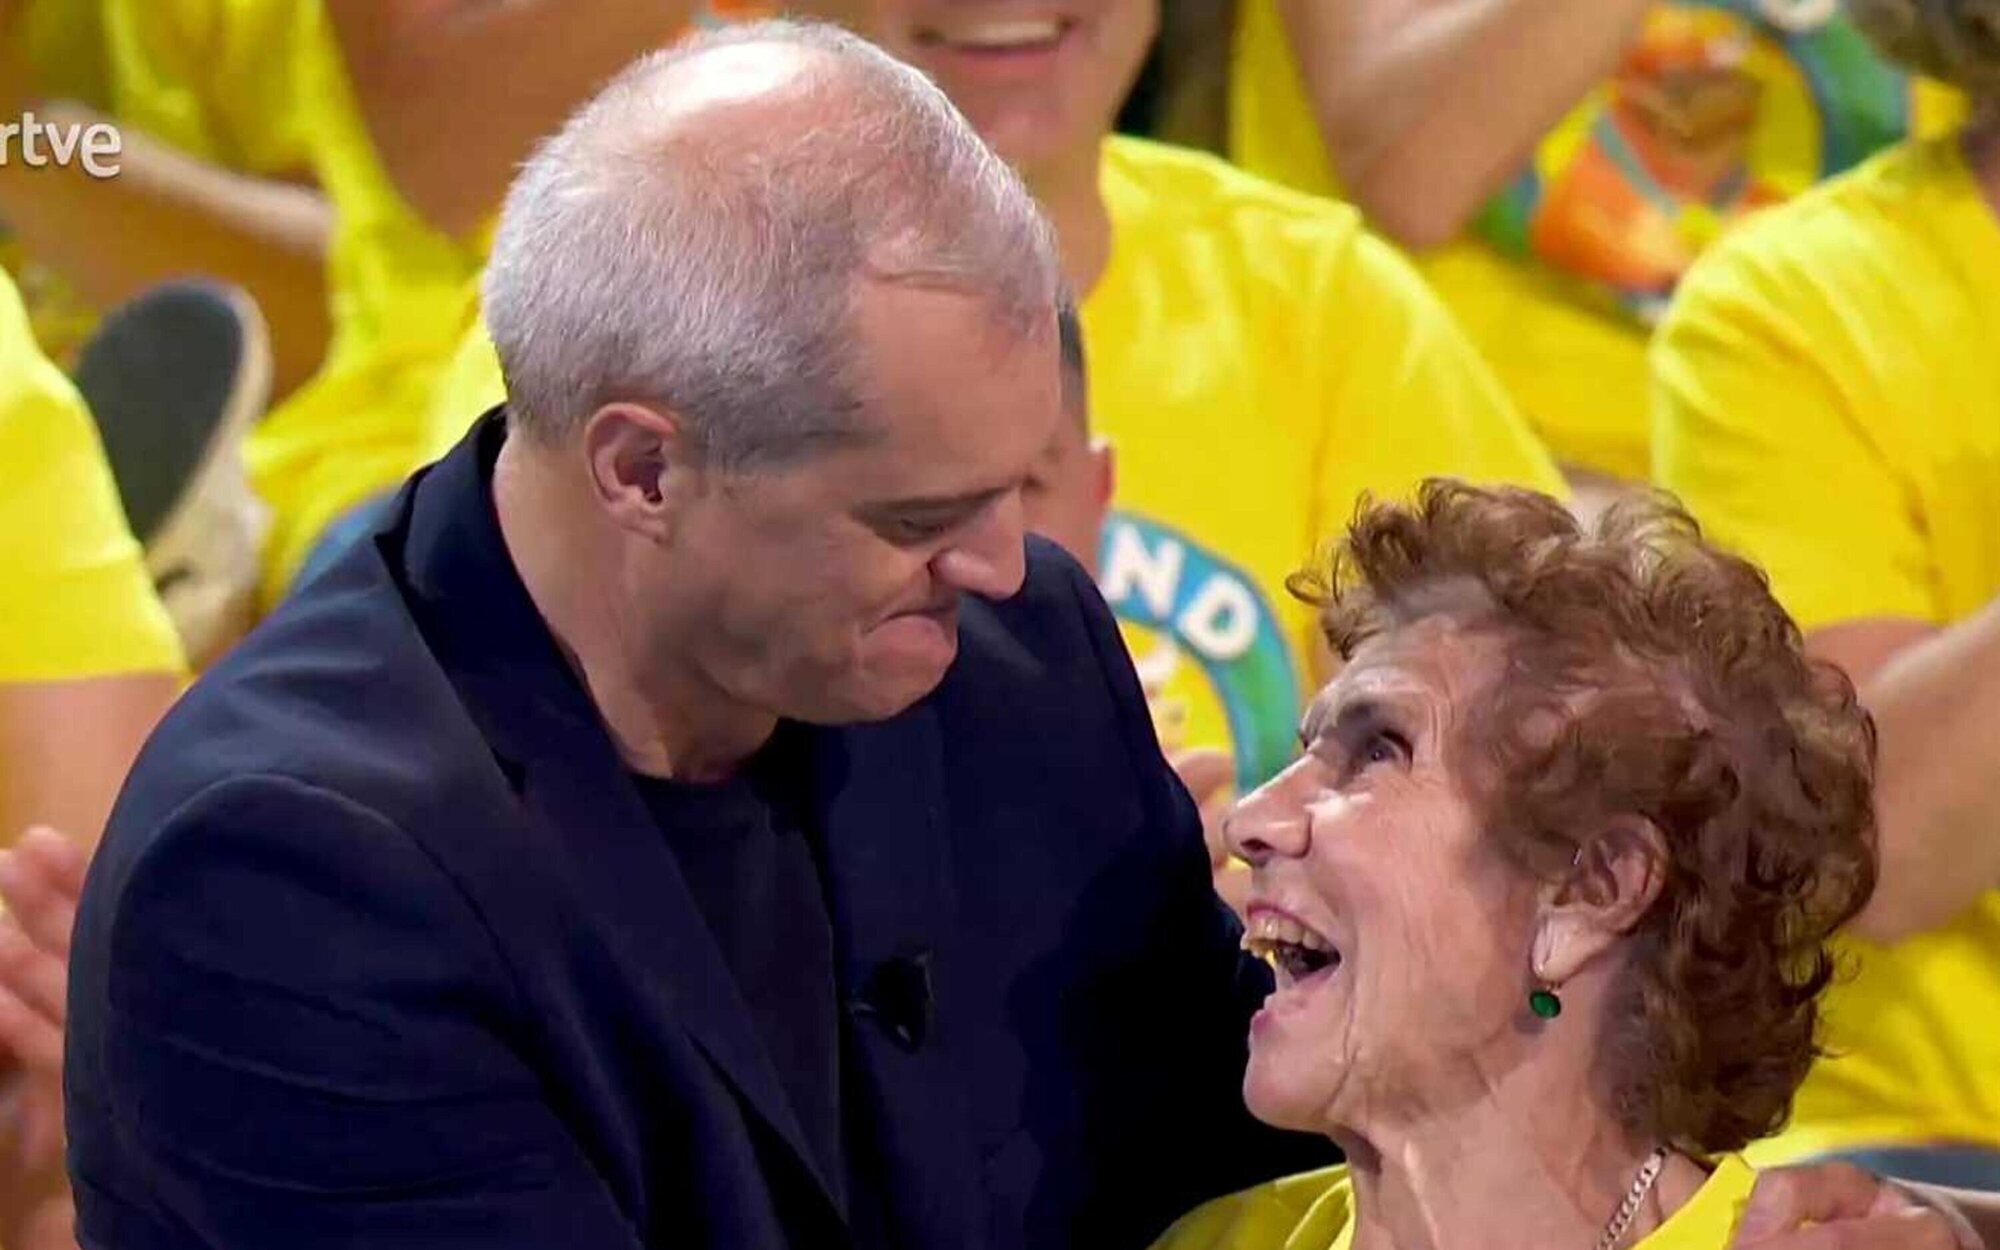 Ramón García se emociona en el 'Grand Prix' con una admiradora de 93 años: "Te veo todos los días" 